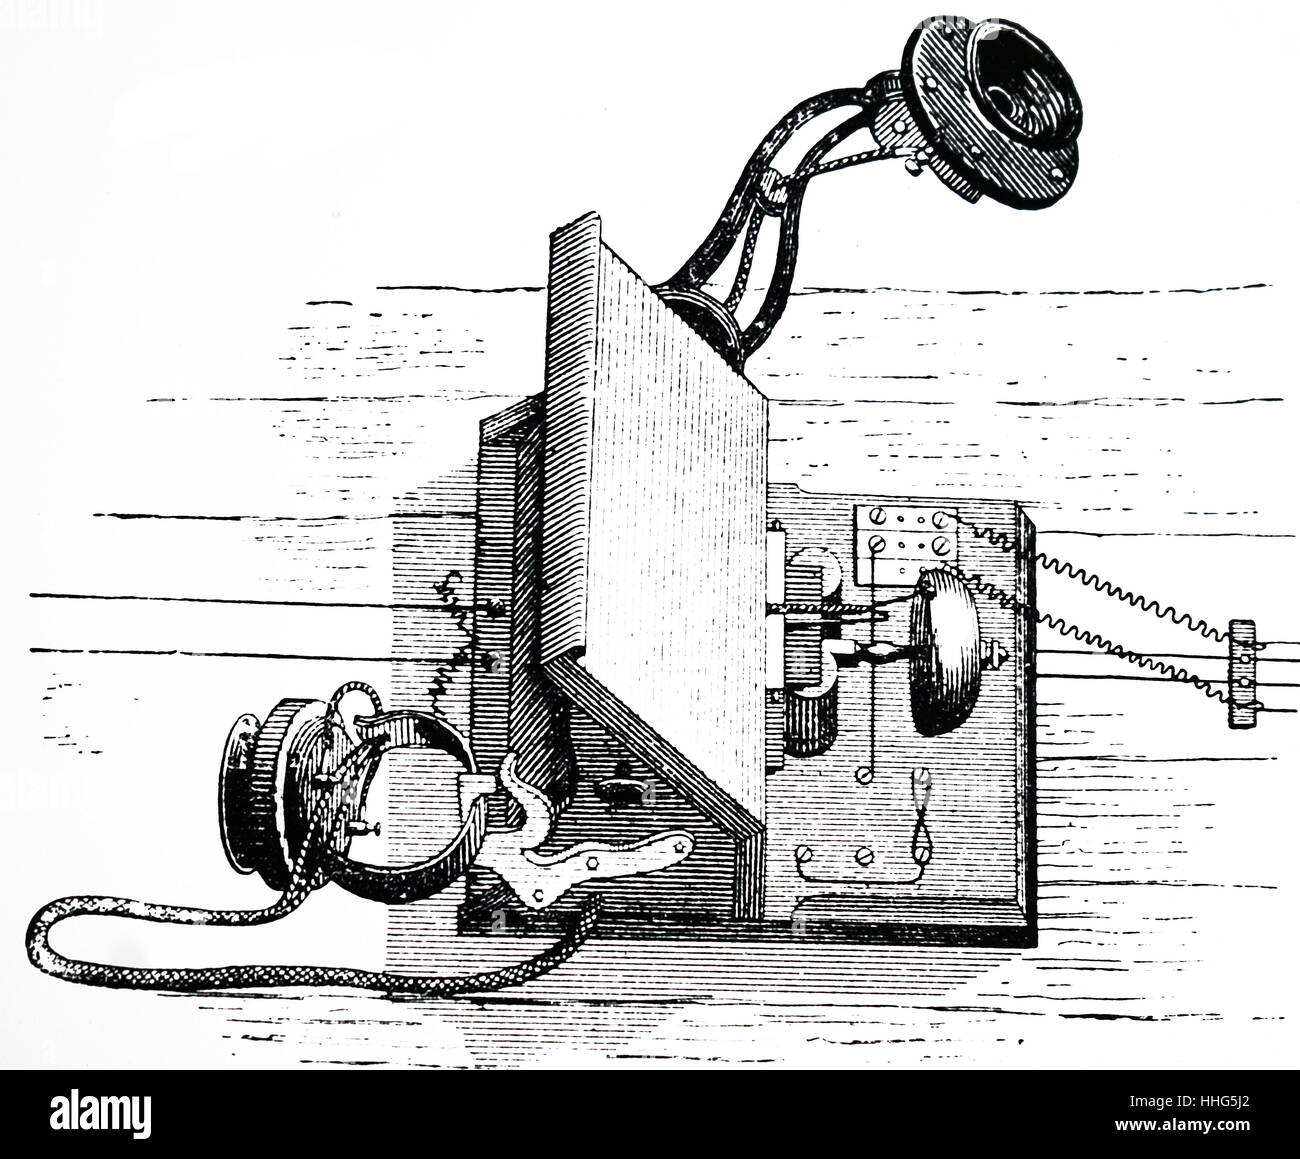 Telefon Apparate durch New York Abonnenten verwendet. Dies wird verwendet, um ein Edison Sender und einem "Pony - Krone' Empfänger (unten rechts im Bild) von Amédée Guillemin. Vom 1891. Stockfoto